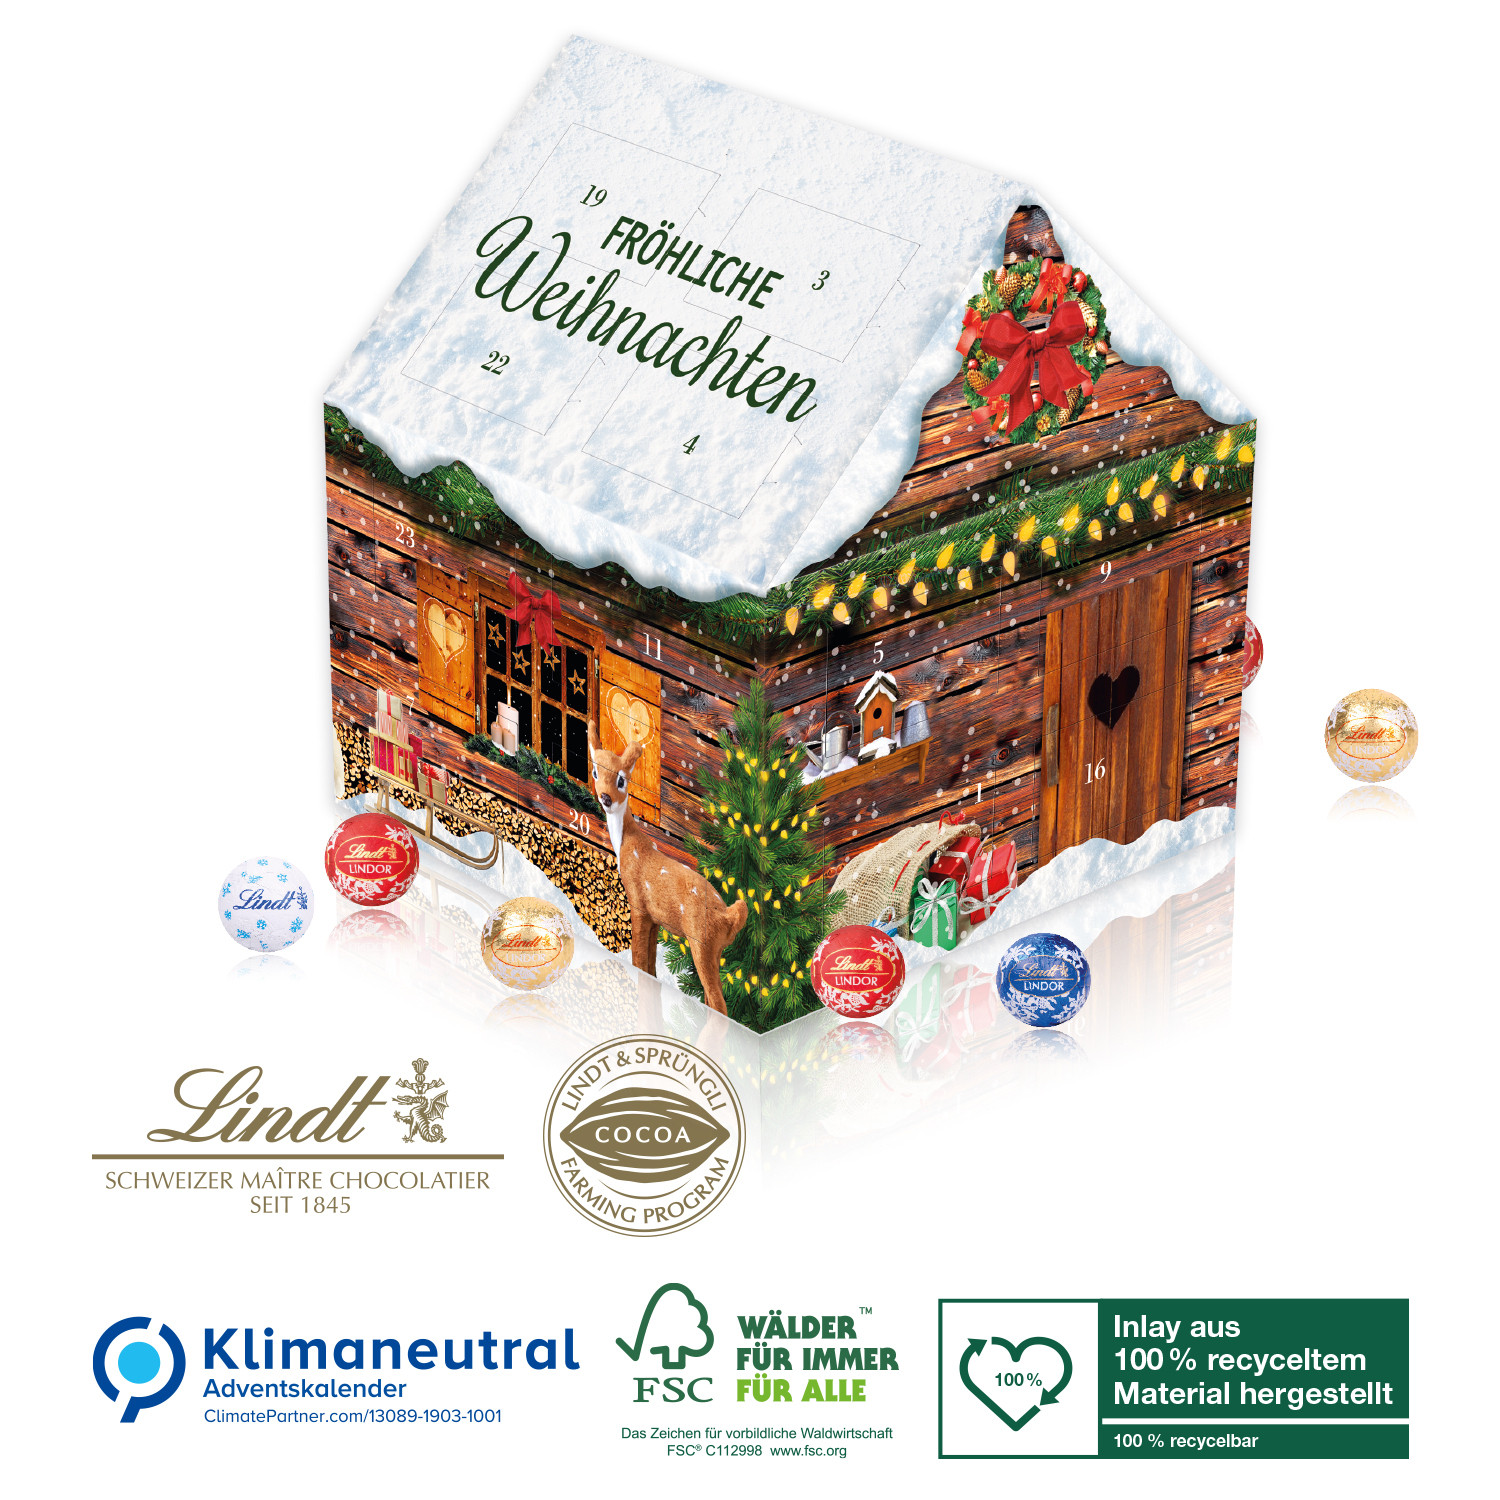 Adventskalender Lindt Weihnachtshaus, Klimaneutral, FSC®, Inlay aus 100% recyceltem Material